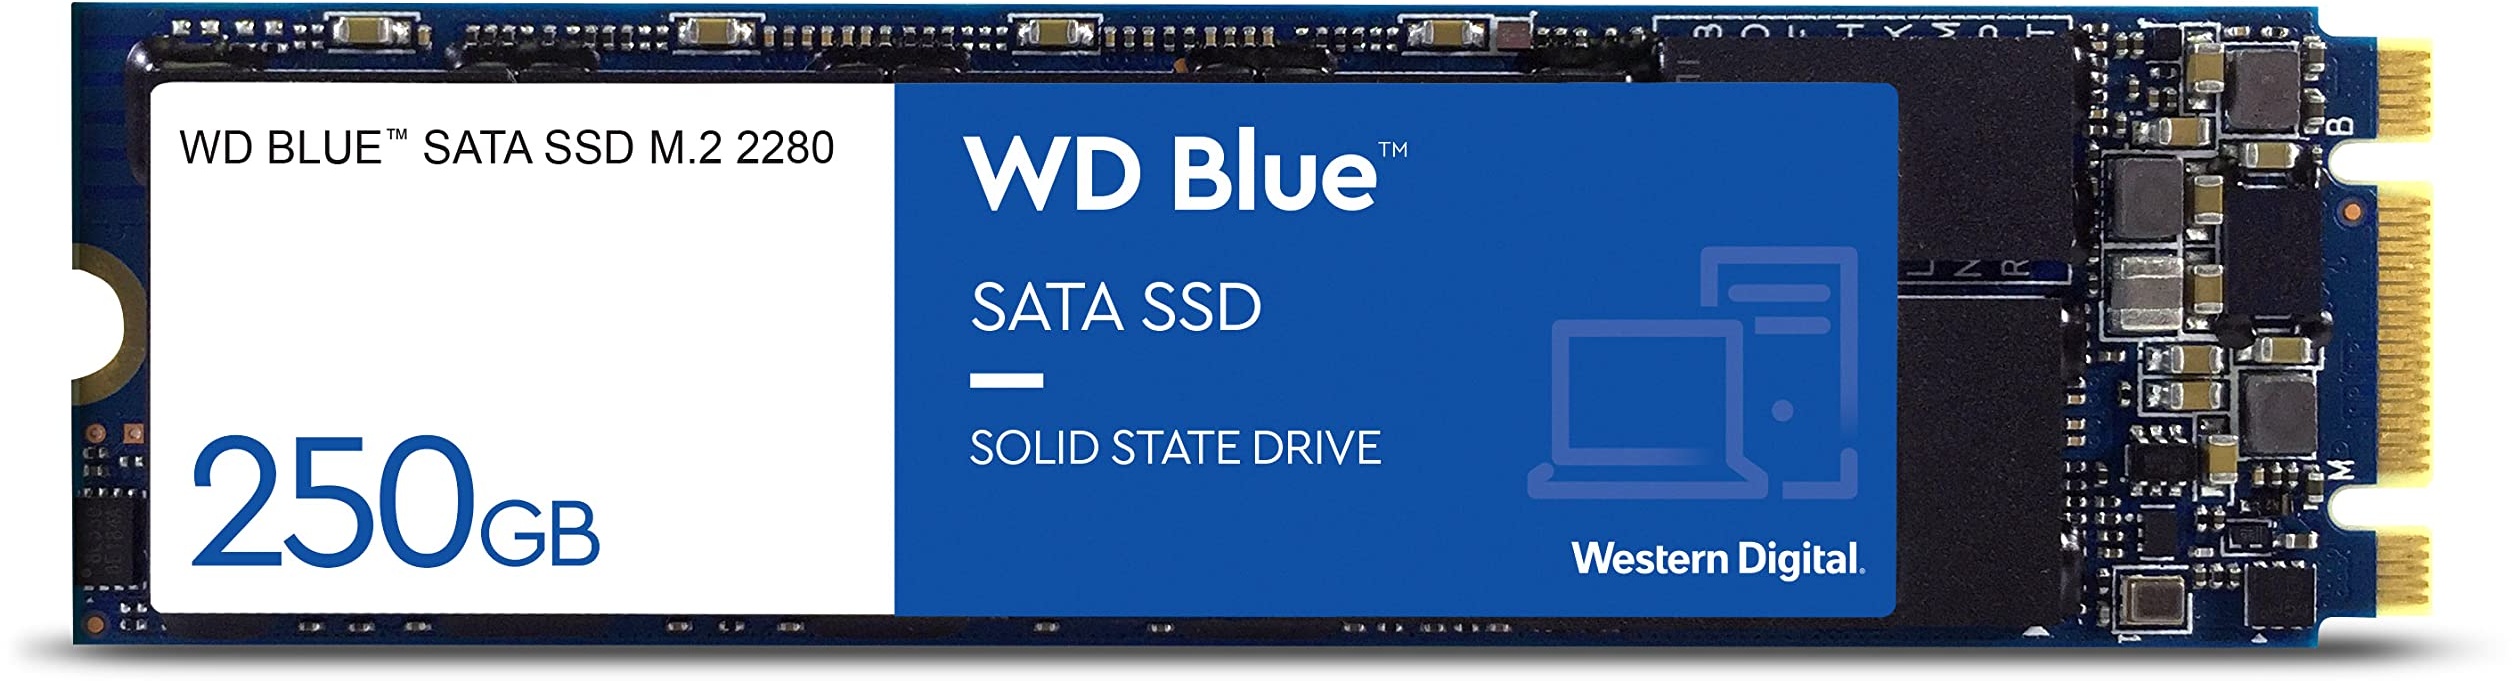 WD Blue SATA SSD M.2 2280 250 GB, 2,5 Zoll (interne SSD, hohe Zuverlässigkeit, Lesevorgänge bis zu 550 MB/s, Schreibvorgänge bis zu 525 MB/s, stoßsicher und WD F.I.T. Lab-zertifiziert)